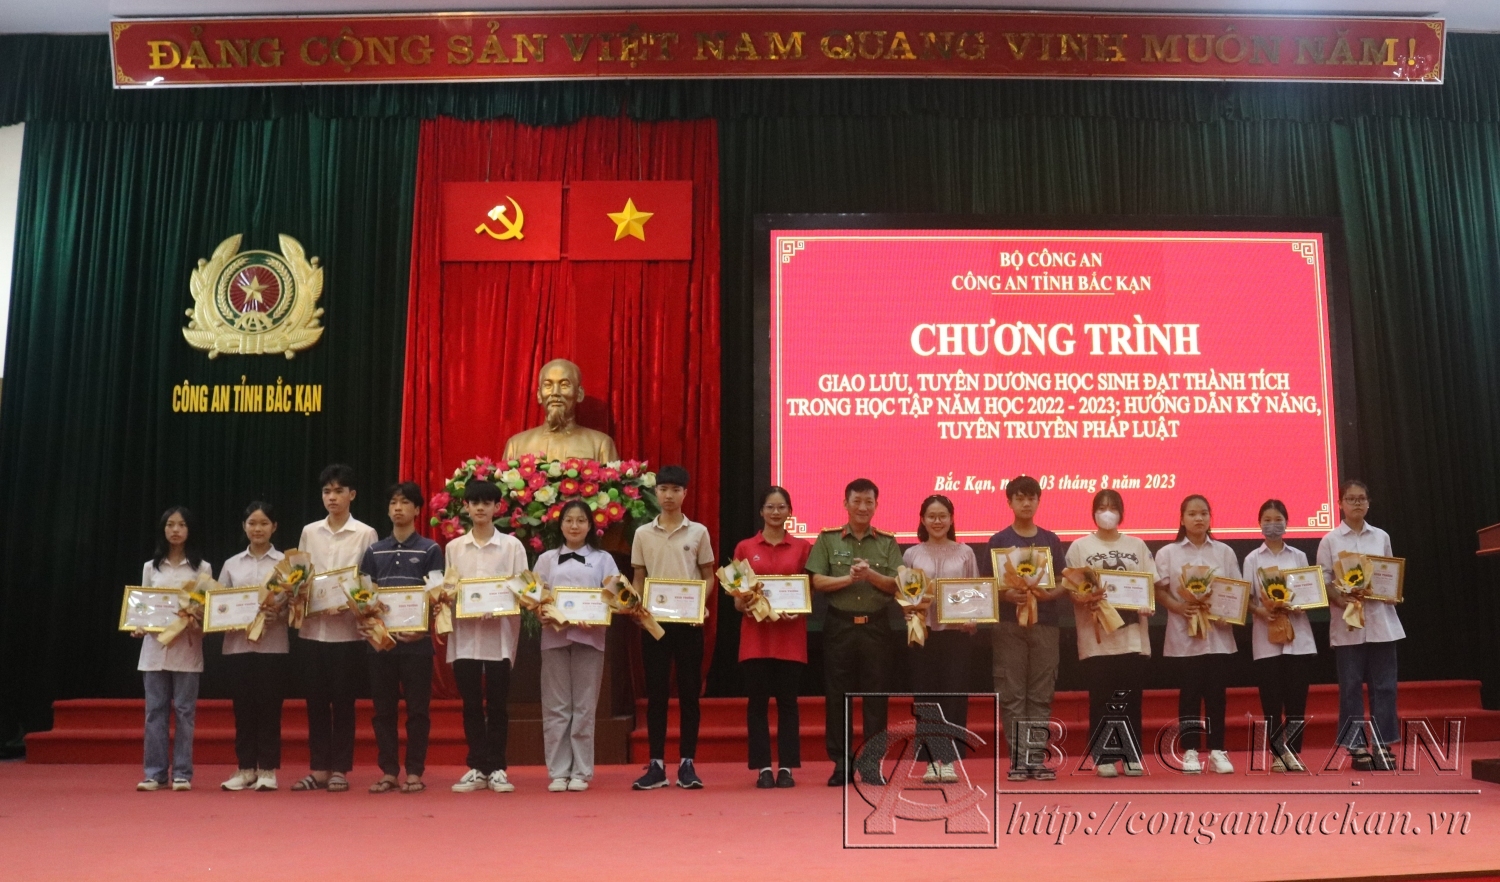 Đại tá Hà Trọng Trung- Phó Giám đốc Công an tỉnh tặng giấy khen cho các em đạt học sinh giỏi cấp tỉnh